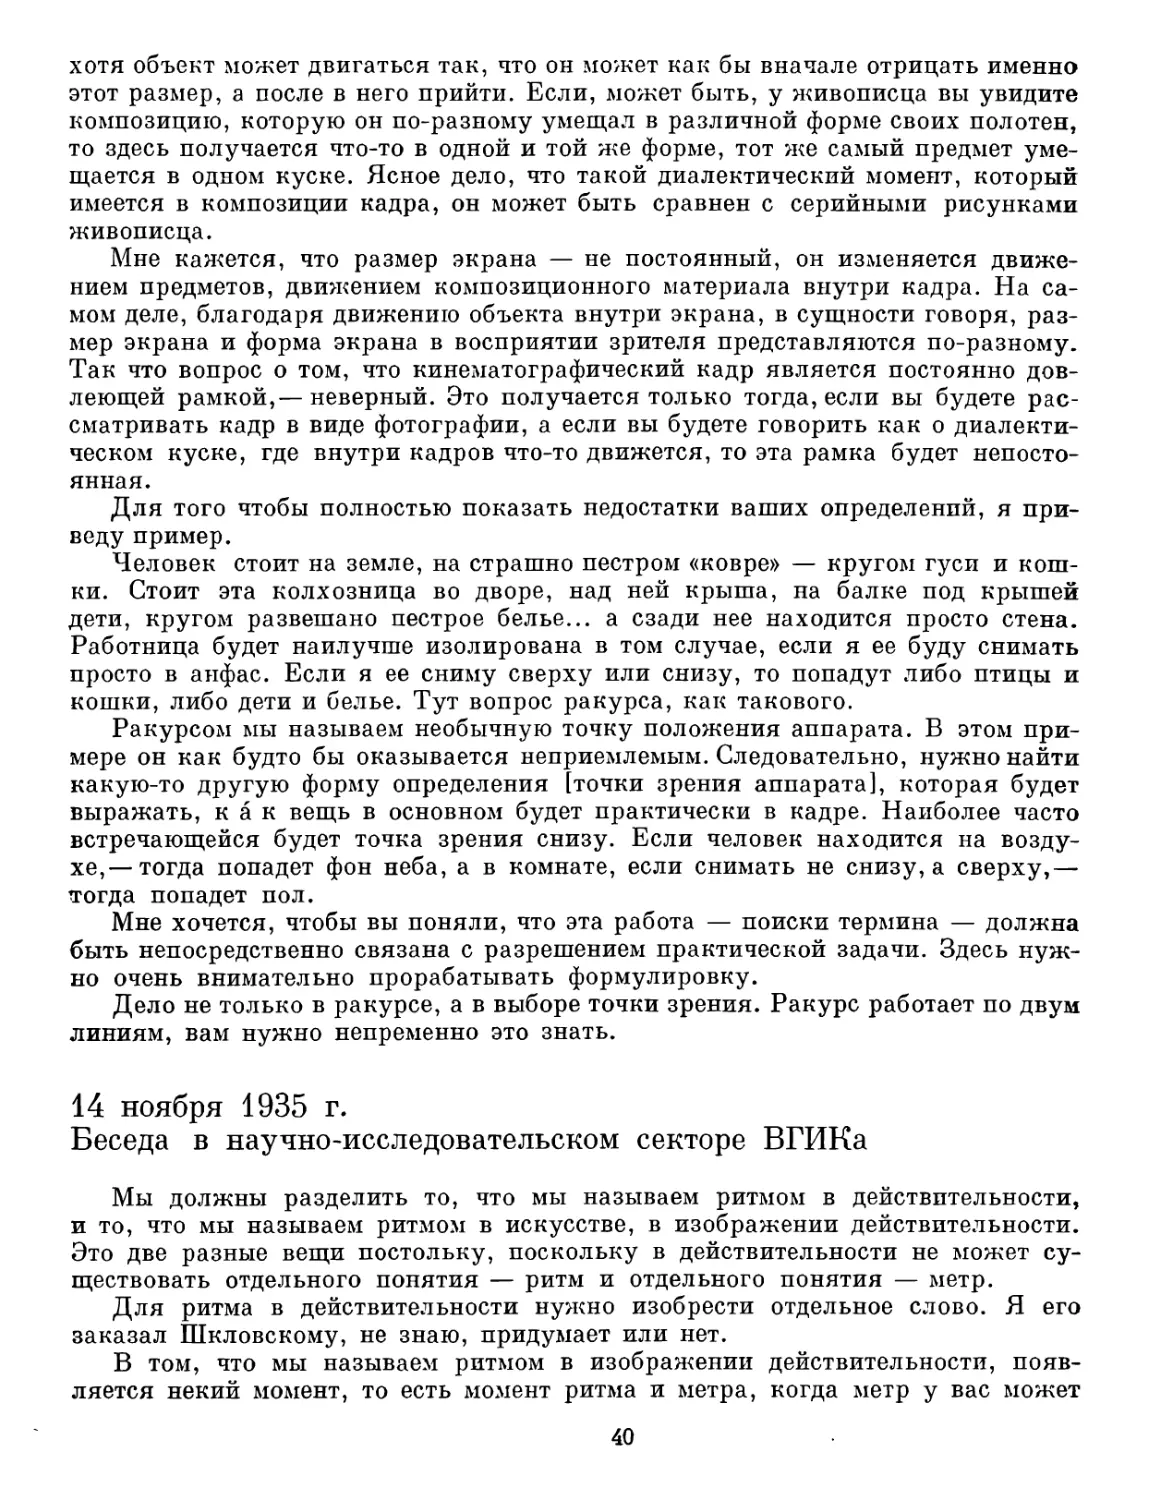 14 ноября 1935 г. Беседа в научно-исследовательском секторе ВГИКа